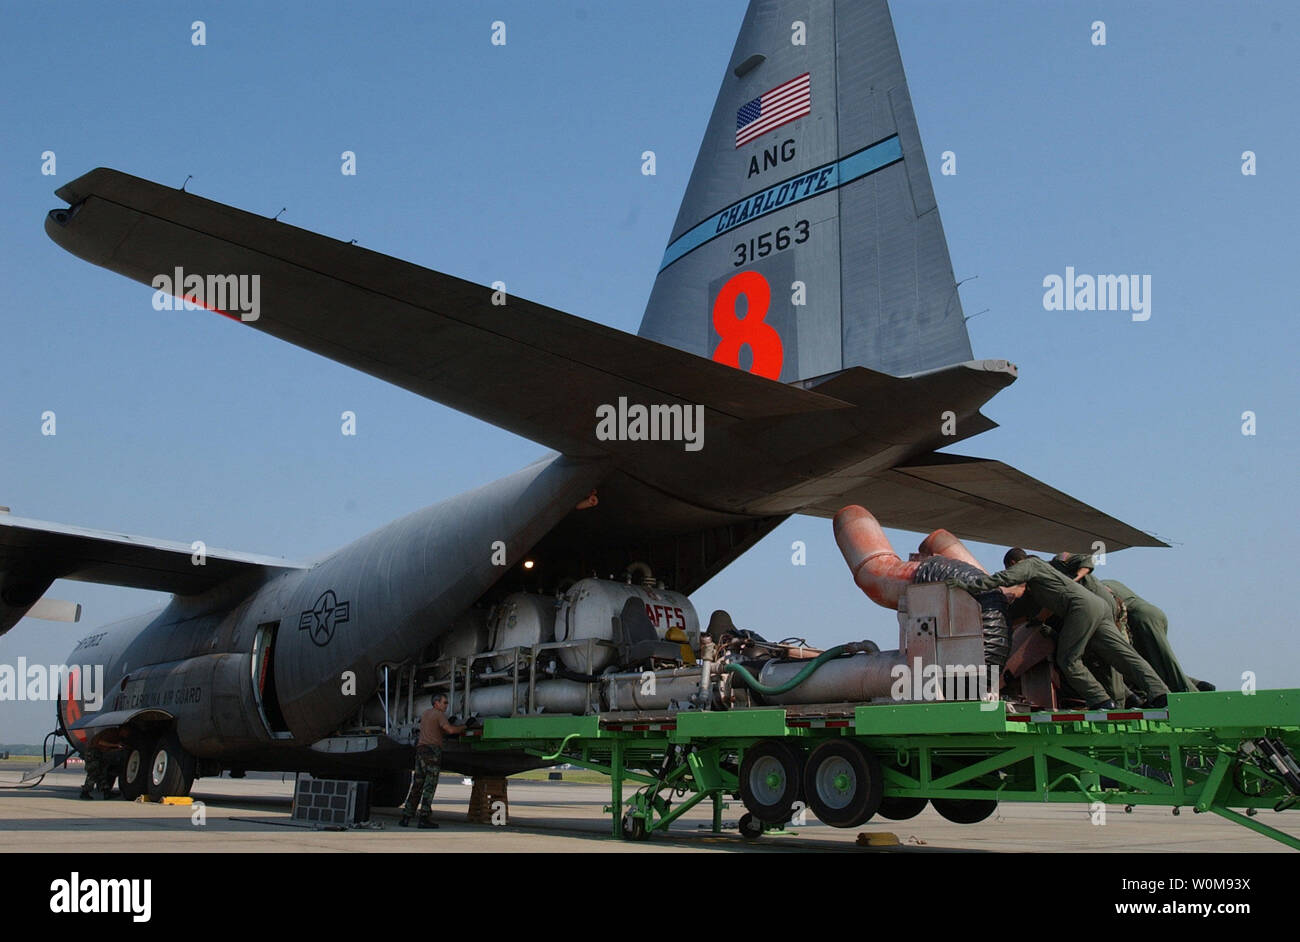 Flieger zum 145. Airlift Wing, North Carolina Air National Guard in Charlotte, N.C., zugeordnet zu drücken, um eine Modulare luftgestützten Brandbekämpfung System (MAFFS) auf eine C-130 Hercules am Mittwoch, den 19. Juli 2006. Die MAFFS Mission stattet C-130 mit einer Brandbekämpfung Apparat, in den Laderaum des Flugzeugs geladen wird. Die MAFFS Einheit selbst ist eine Reihe von unter Druck stehender Behälter mit einem Fassungsvermögen von 3.000 Liter schwer entflammbare Flüssigkeit Phos-Chek genannt. Unter der Regie von bodencrews und führte zu der Brandstelle durch eine U.S. Forest Service führen, Flugzeug, Flugzeuge MAFFS drop entflammbar entlang der Vorderkante eines Feuers zu b Stockfoto